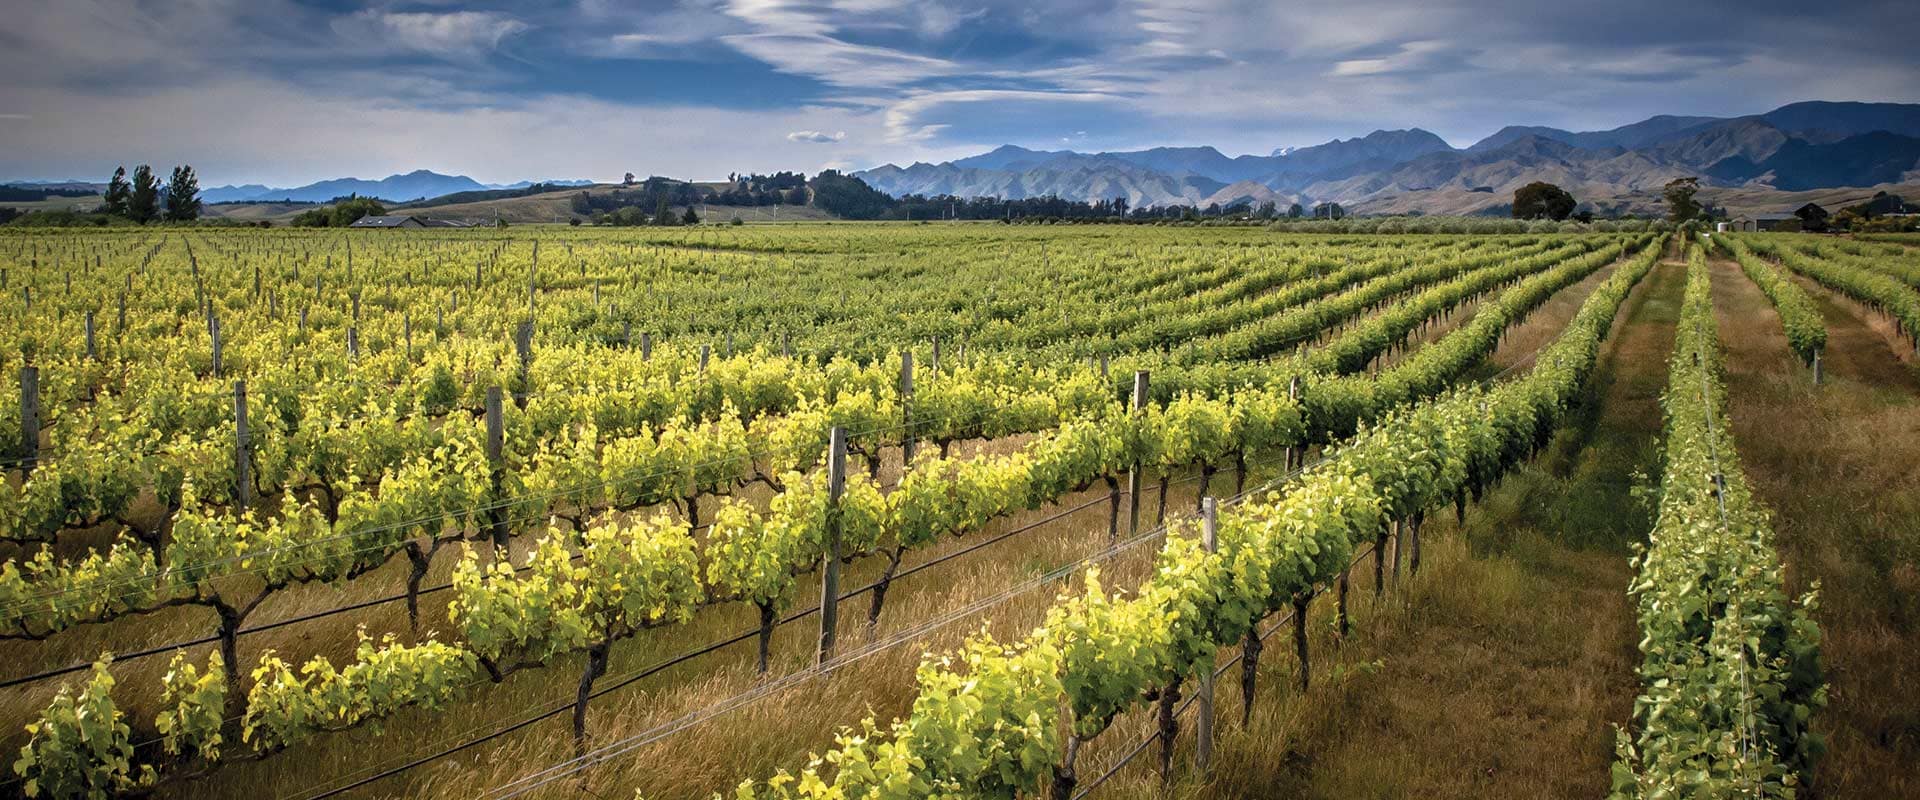 Explore premier food and wine growing regions.